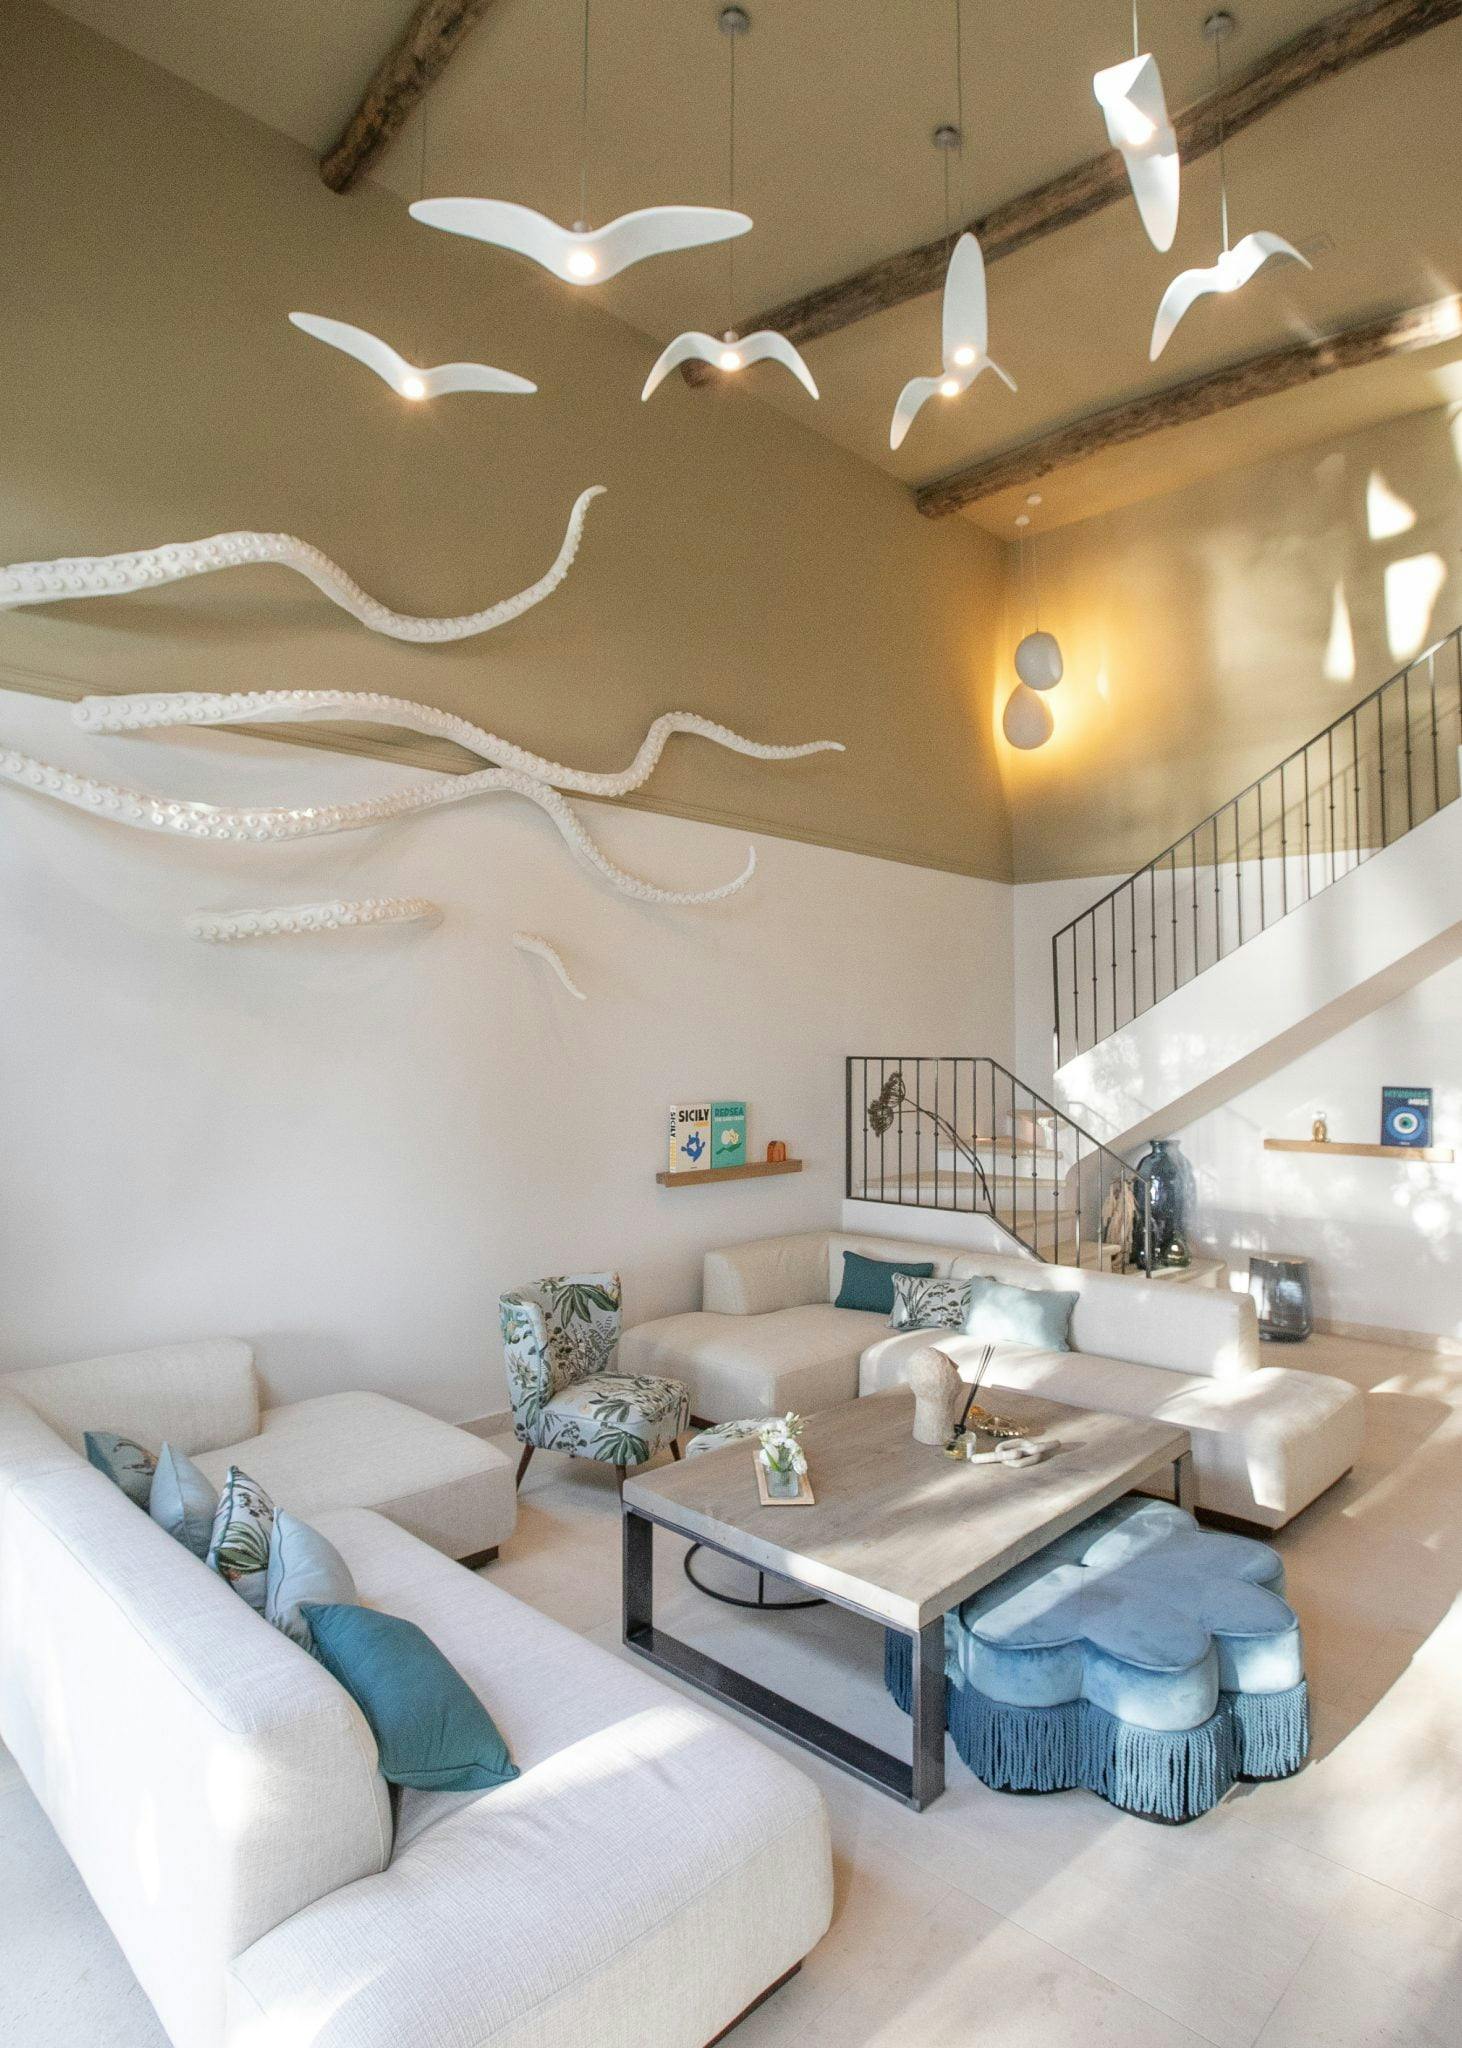 Salon décorée avec une sculpture d'octopus au mur, grand hauteur sous plafond, canapés blancs et oiseaux suspendus